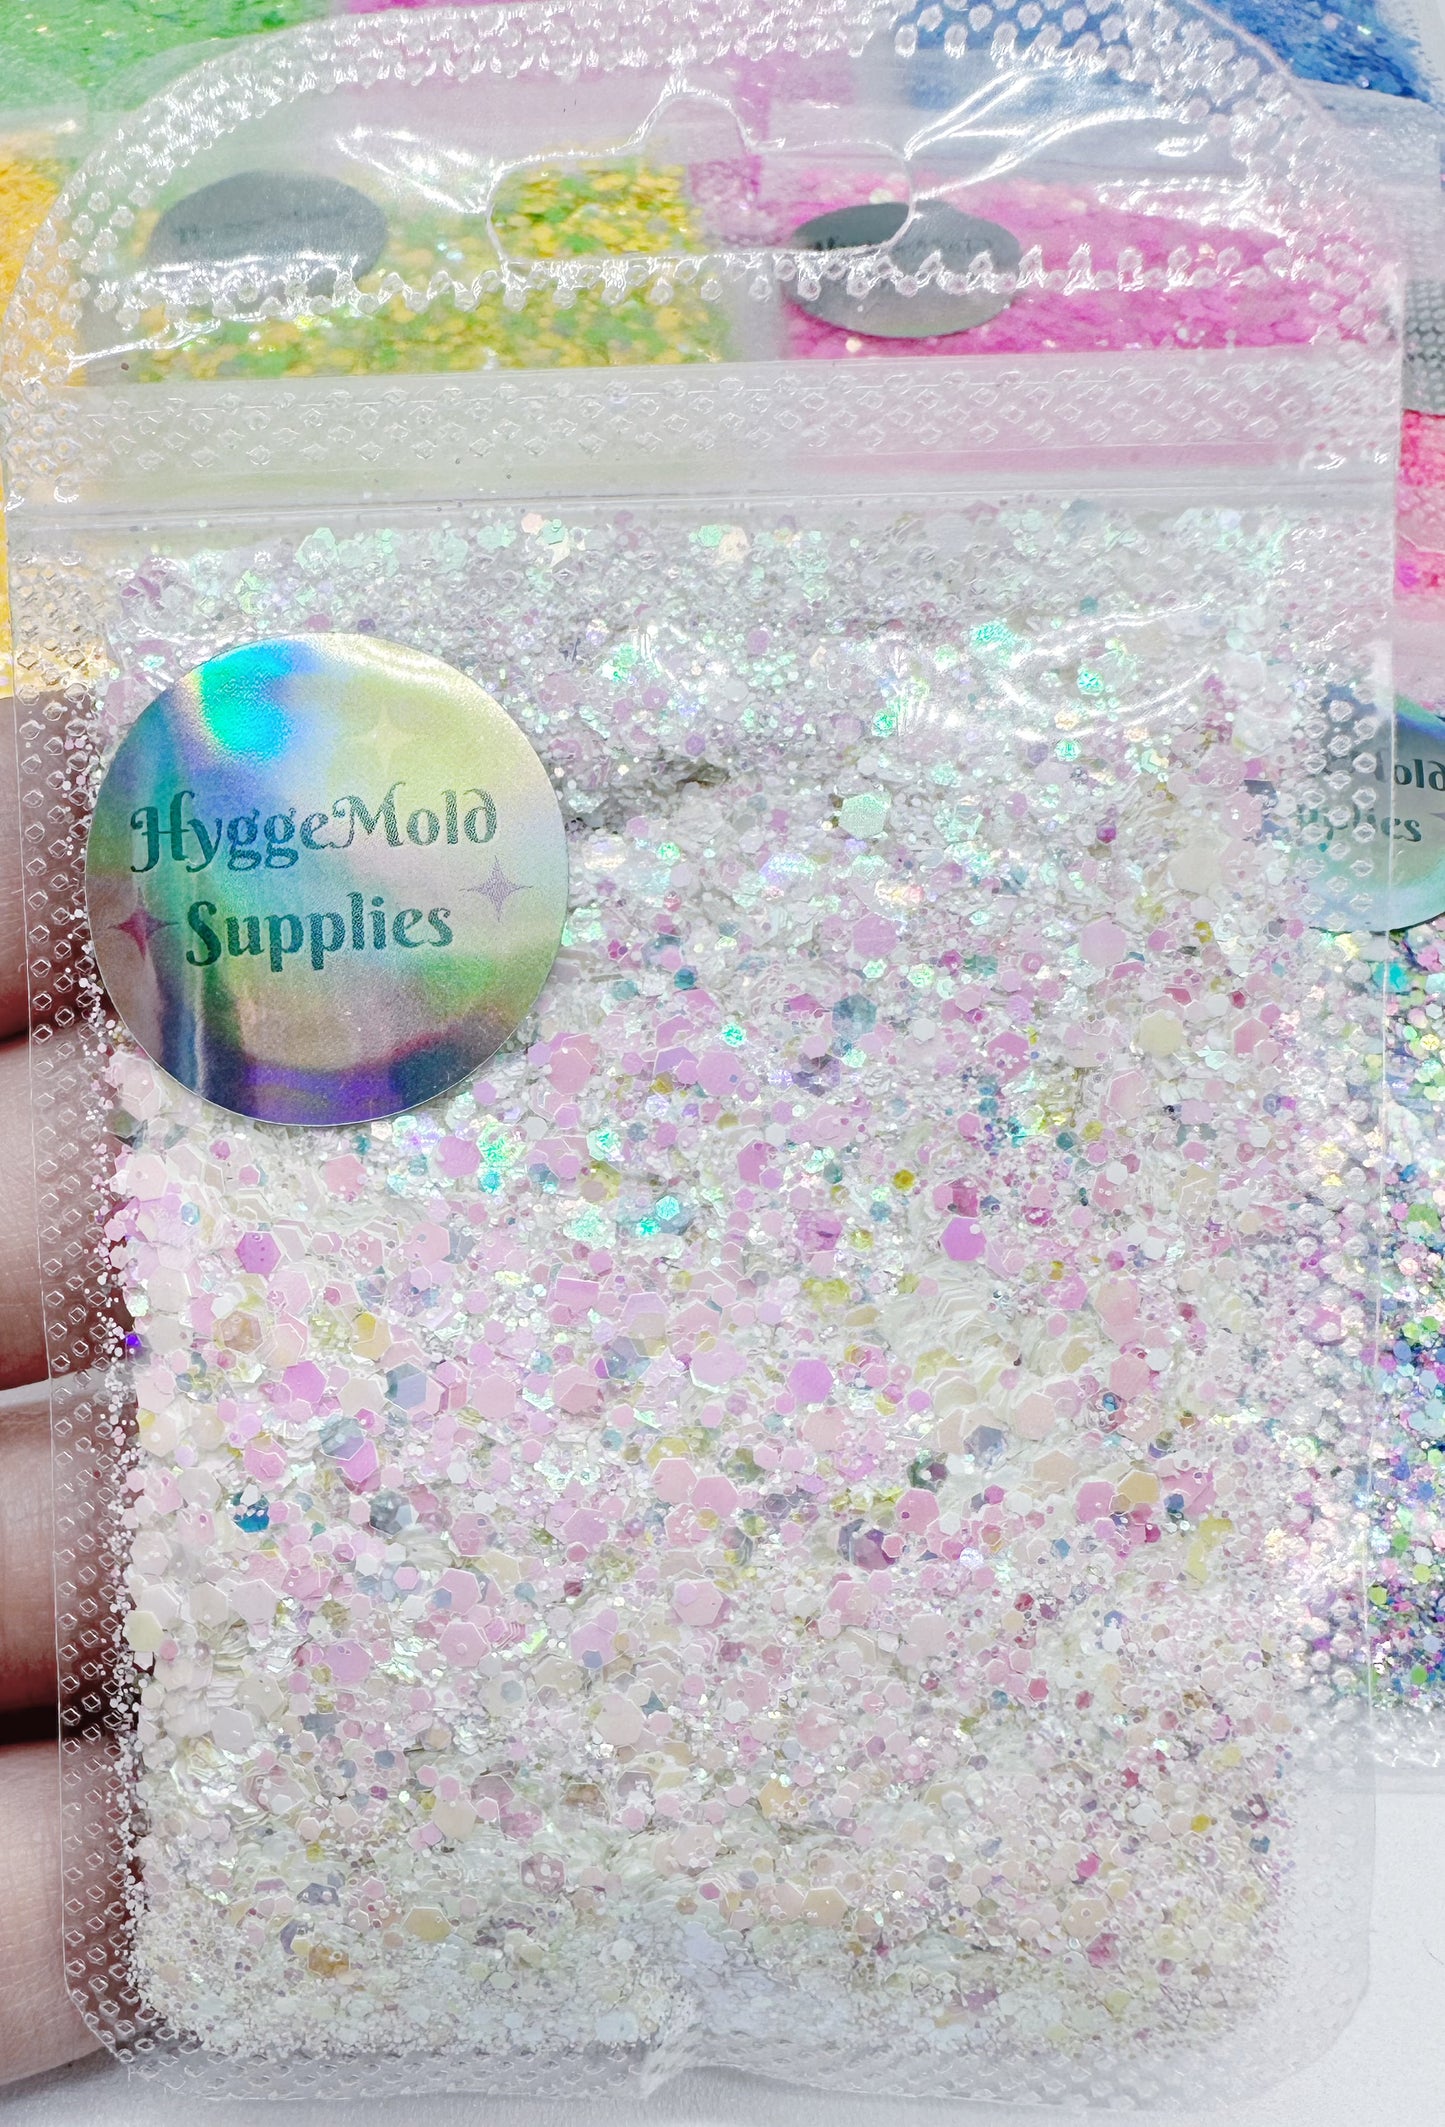 10g Pastel Pearls Prism Magic Glitter Mix